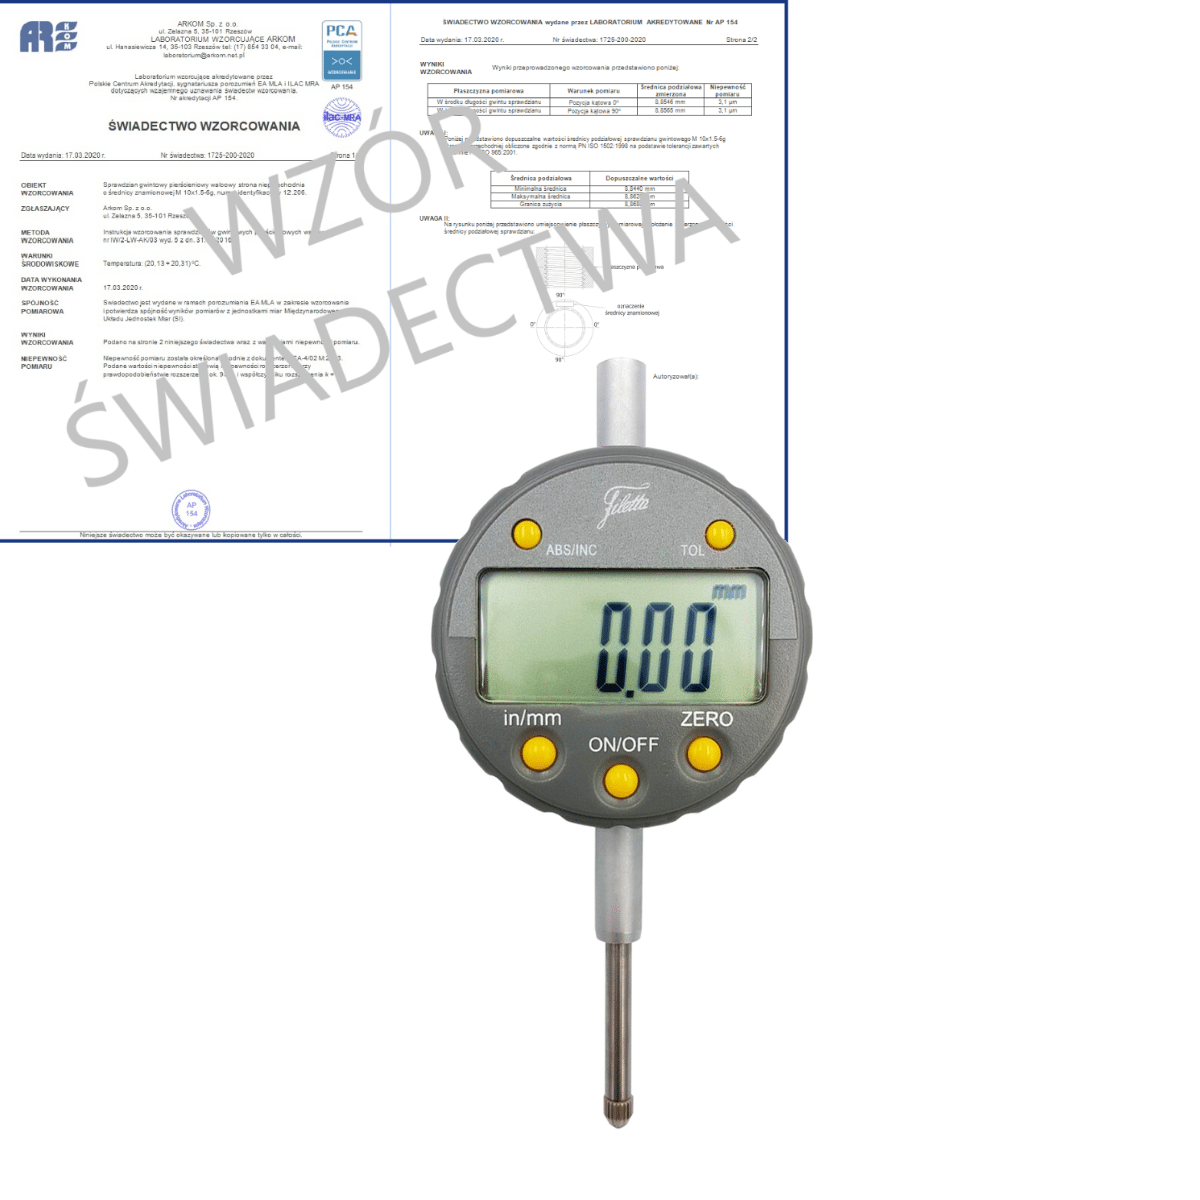 SCHUT czujnik elektroniczny 0-25/0.01 mm + świadectwo wzorcowania PCA 907.649 WZORC (Zdjęcie 1)